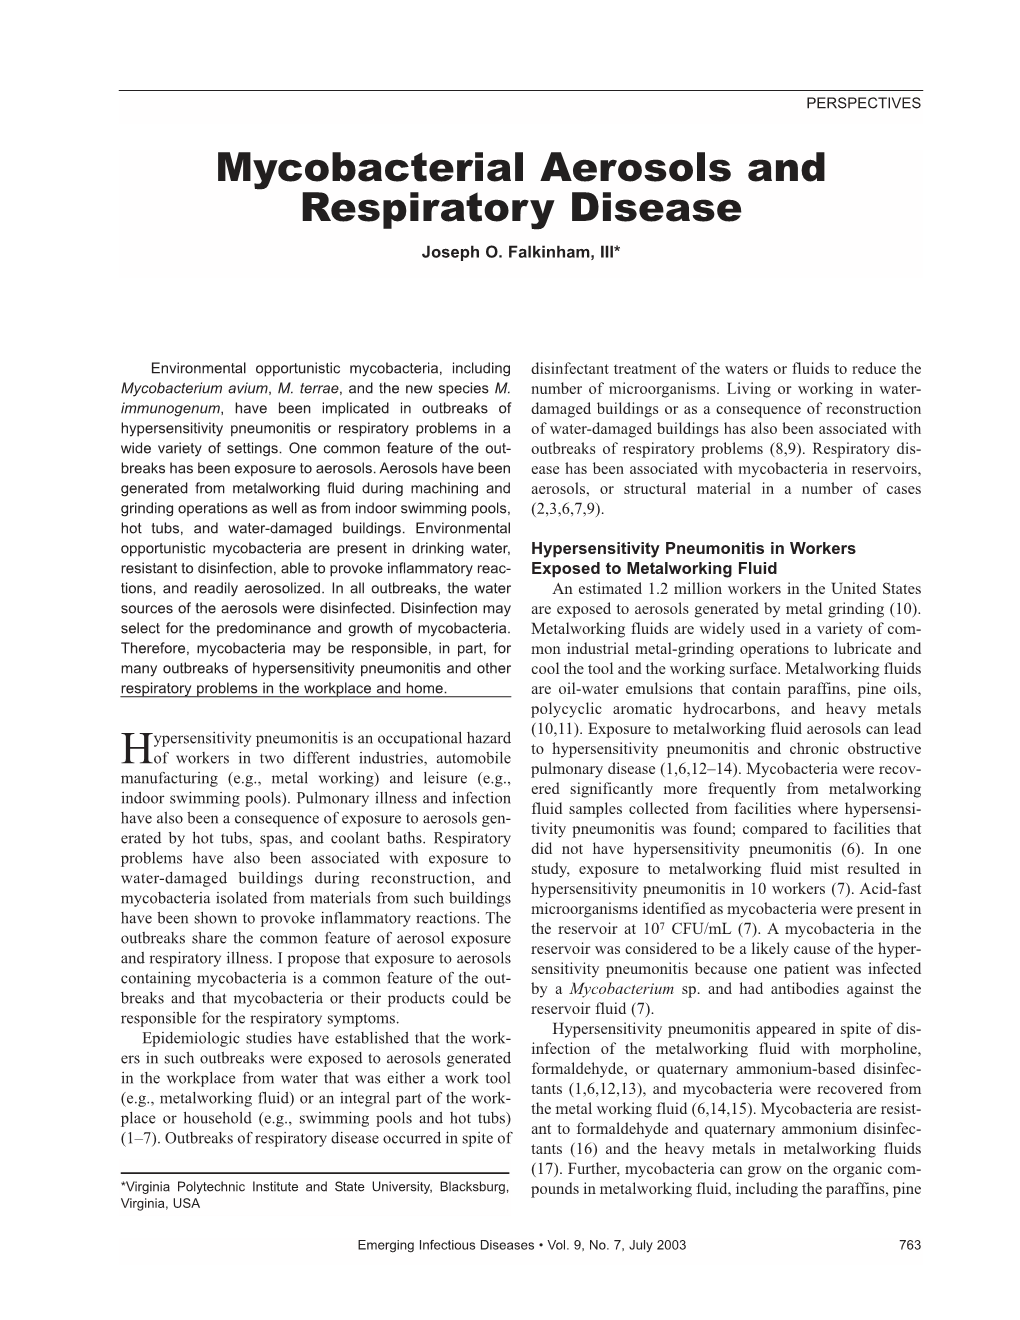 Mycobacterial Aerosols and Respiratory Disease Joseph O